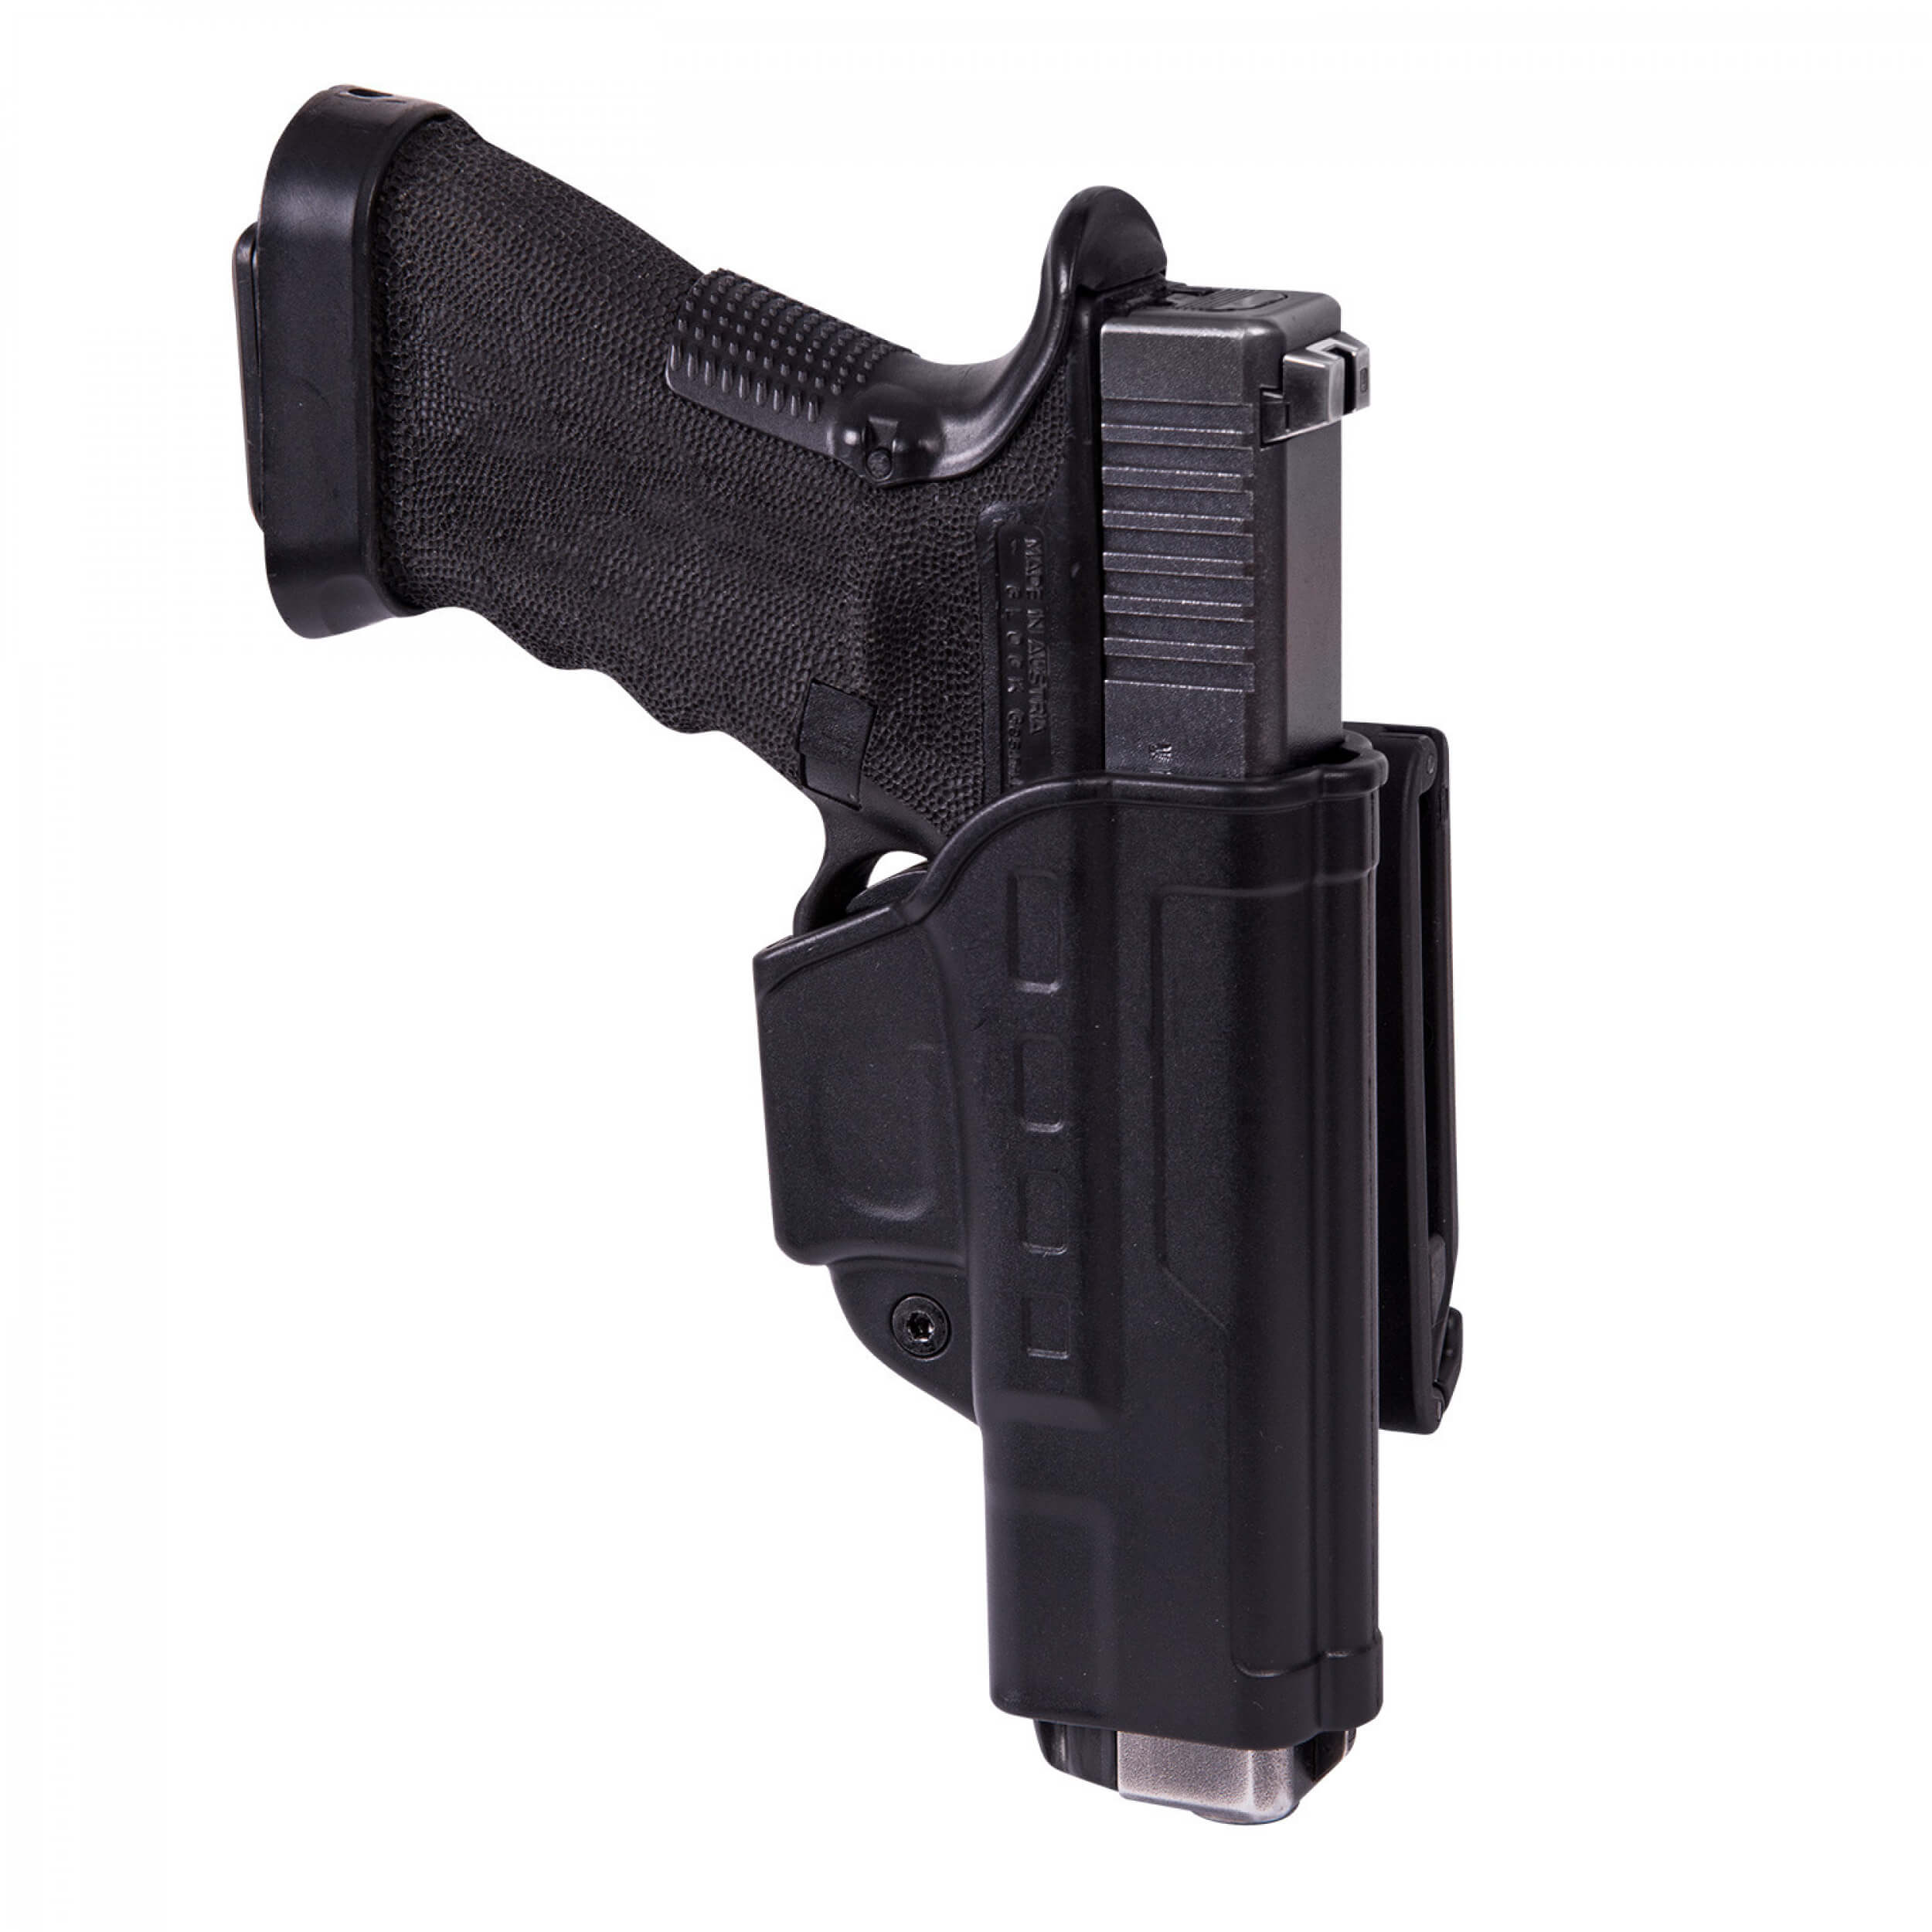 Helikon-Tex Fast Draw Holster für Glock 17 mit Gürtelclip - Military Grade Polymer - Schwarz